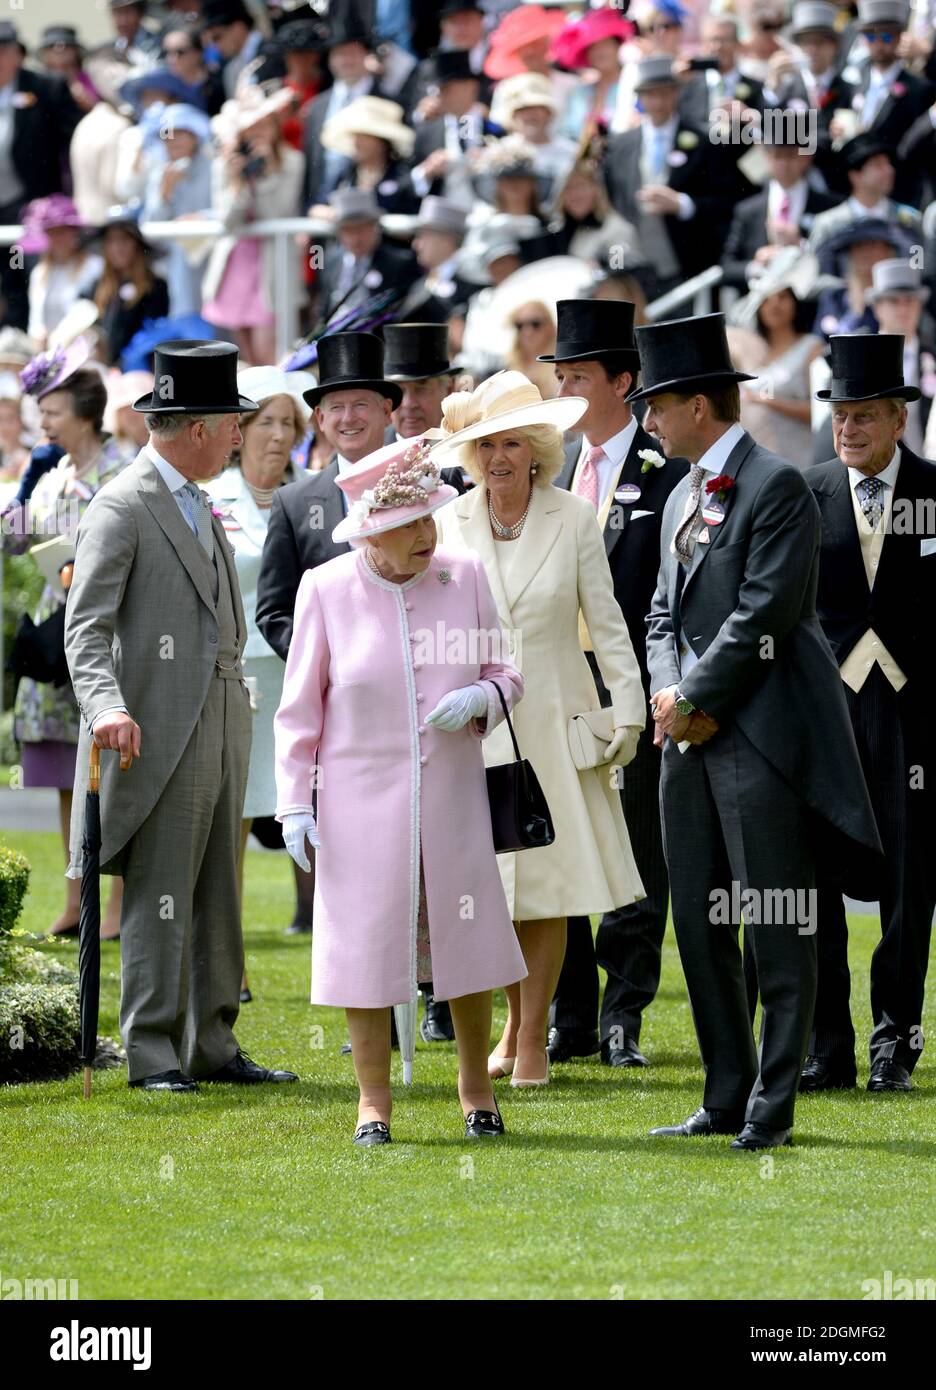 Reine Elizabeth II, Camilla la duchesse de Cornouailles, duc d'Édimbourg, prince Philip et prince de Galles, prince Charles pendant la deuxième journée de Royal Ascot 2016, à l'hippodrome d'Ascot. Banque D'Images